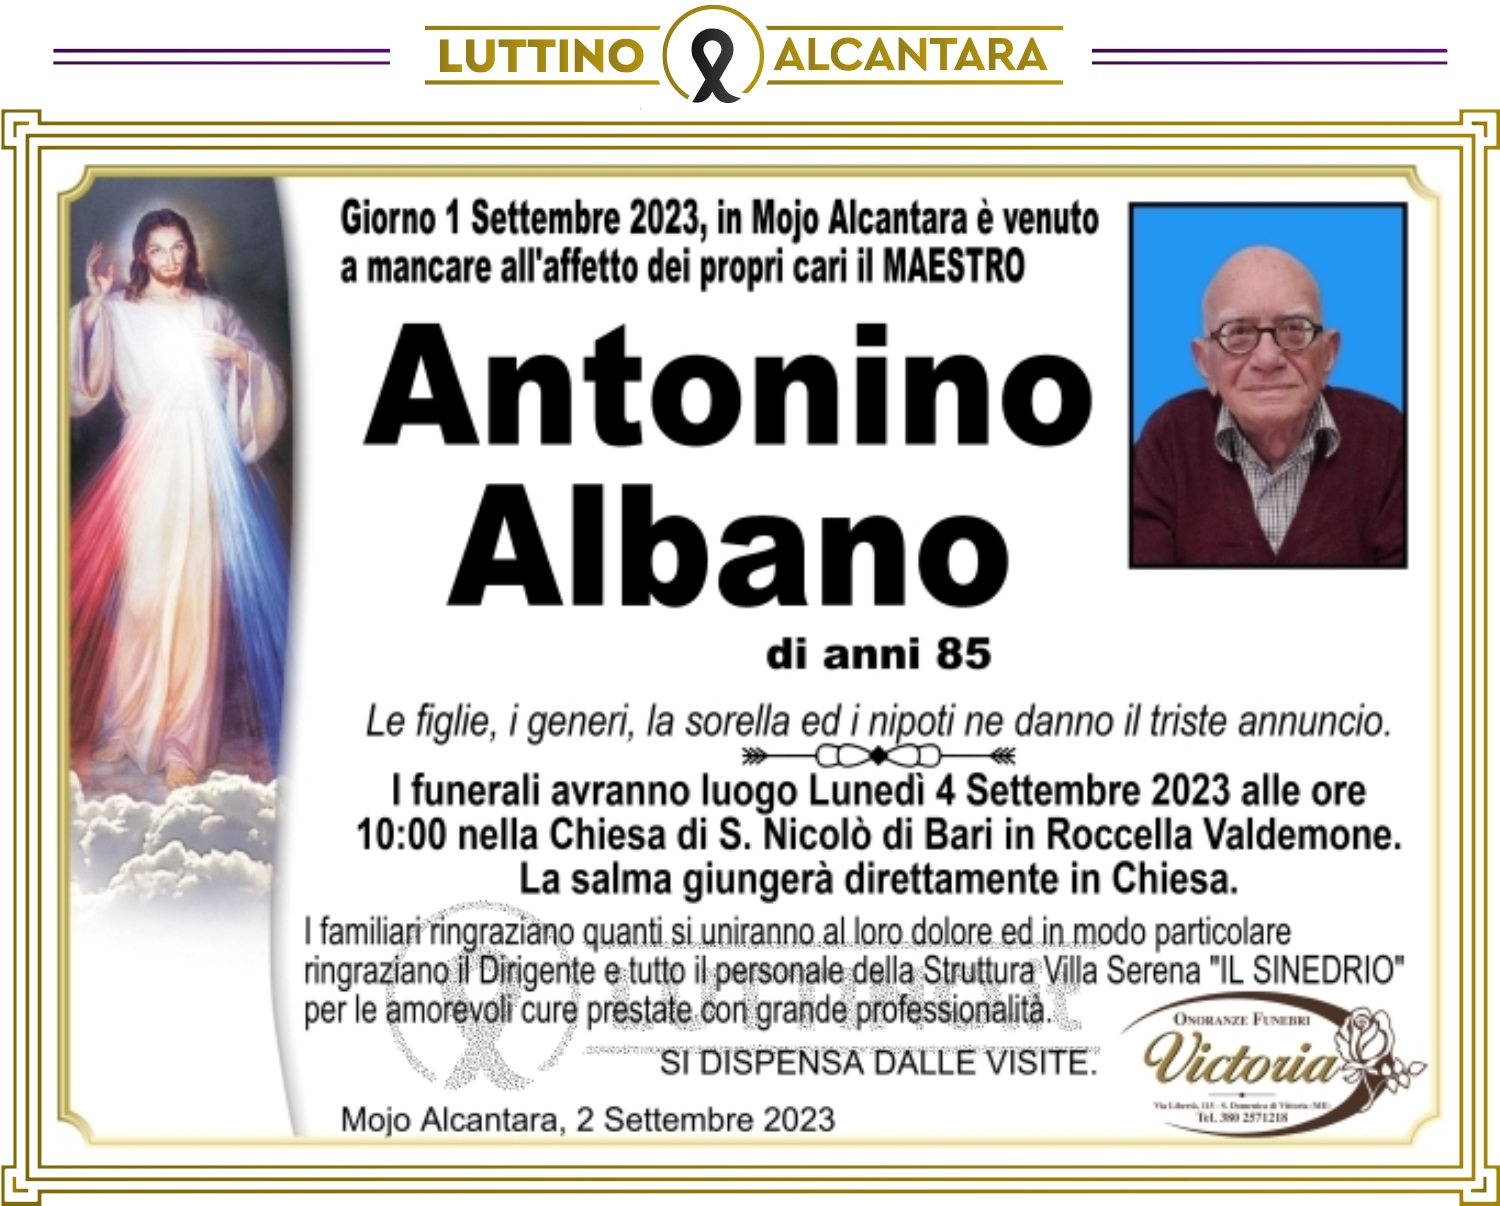 Antonino Albano